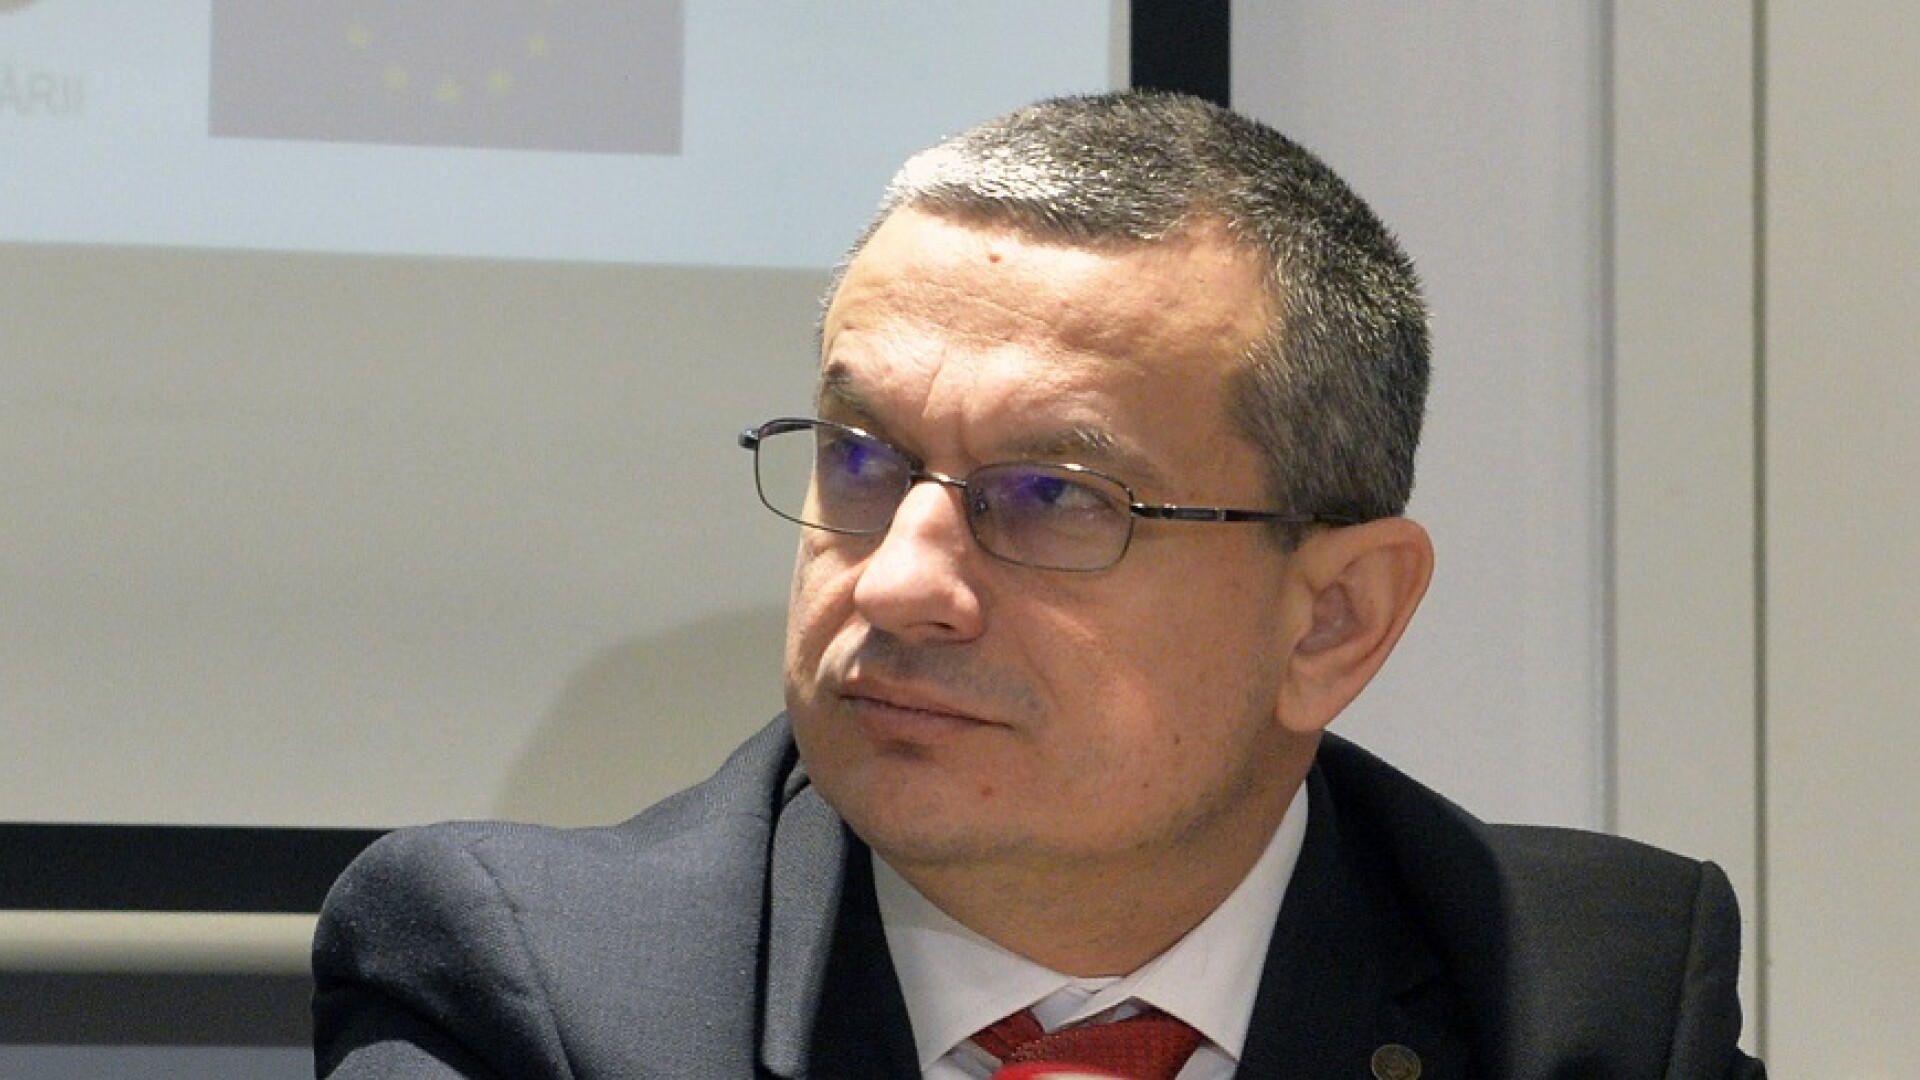 Csaba Ferenc Asztalos, presedintele Consiliului National pentru Combaterea Discriminarii (CNCD)